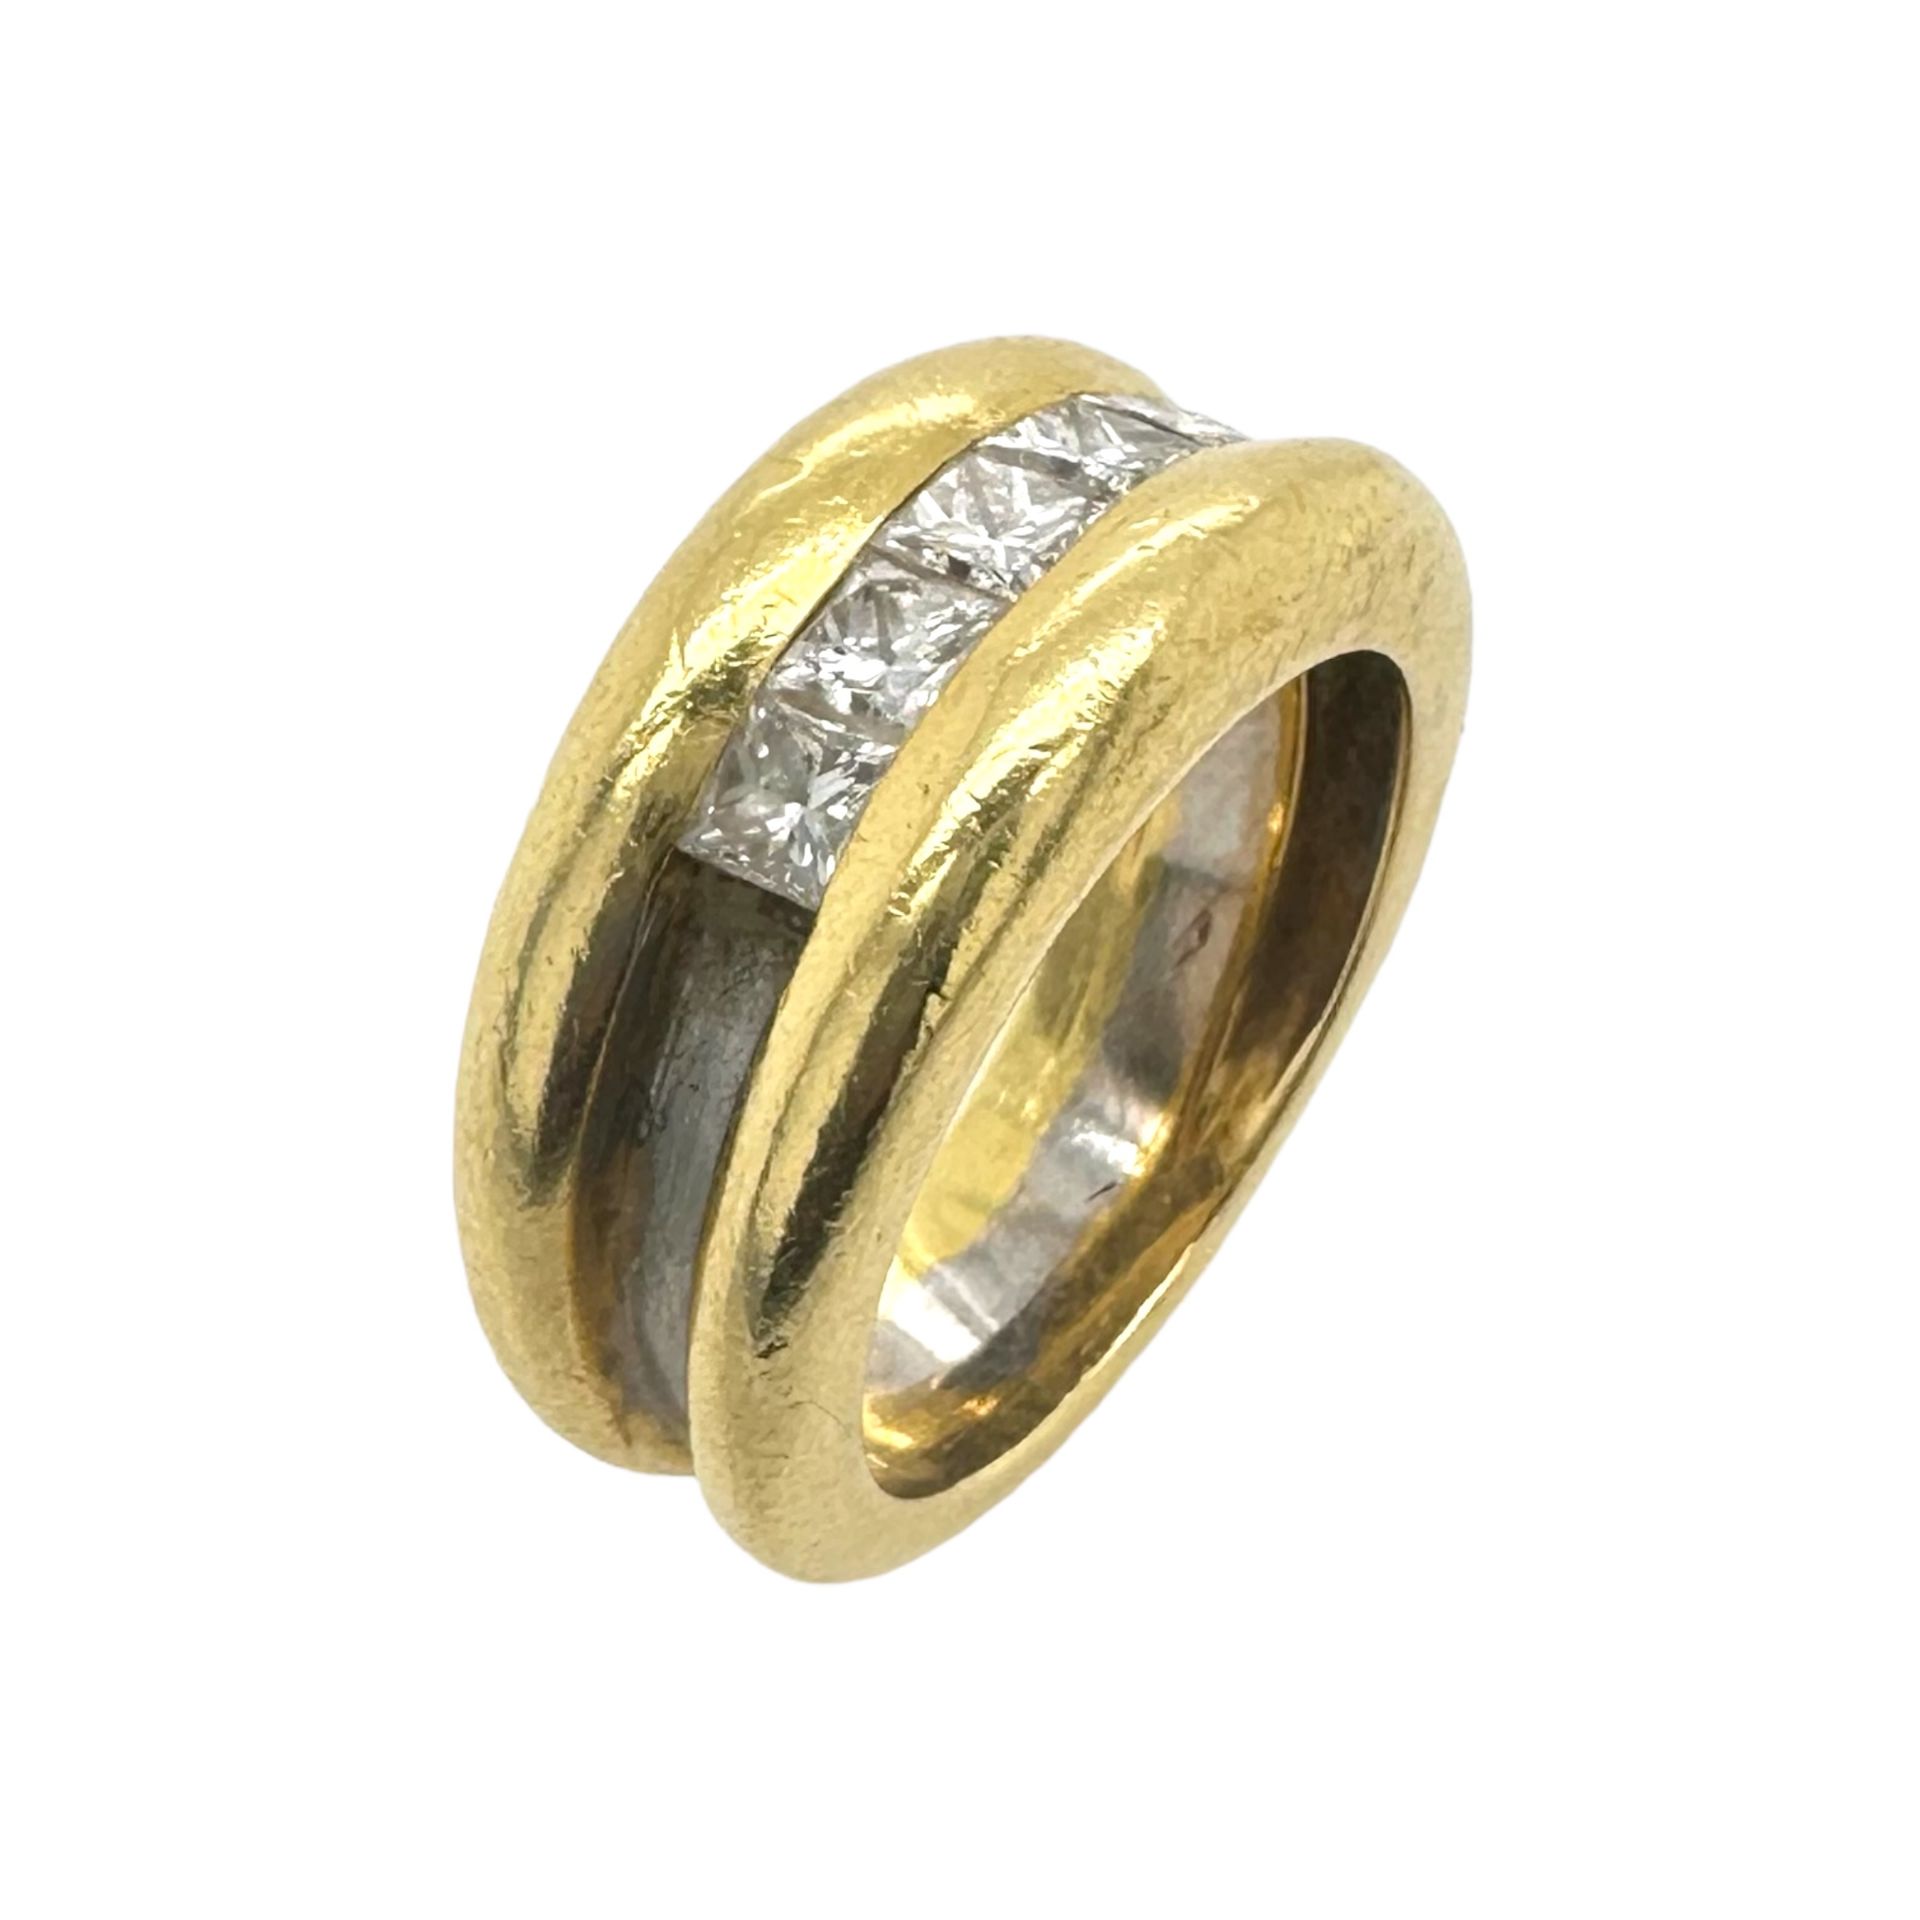 Ring 12,41g 750/- Gelbgold und Weissgold mit 5 Diamanten zus. ca. 0,40 ct., Ringgroesse ca. 54